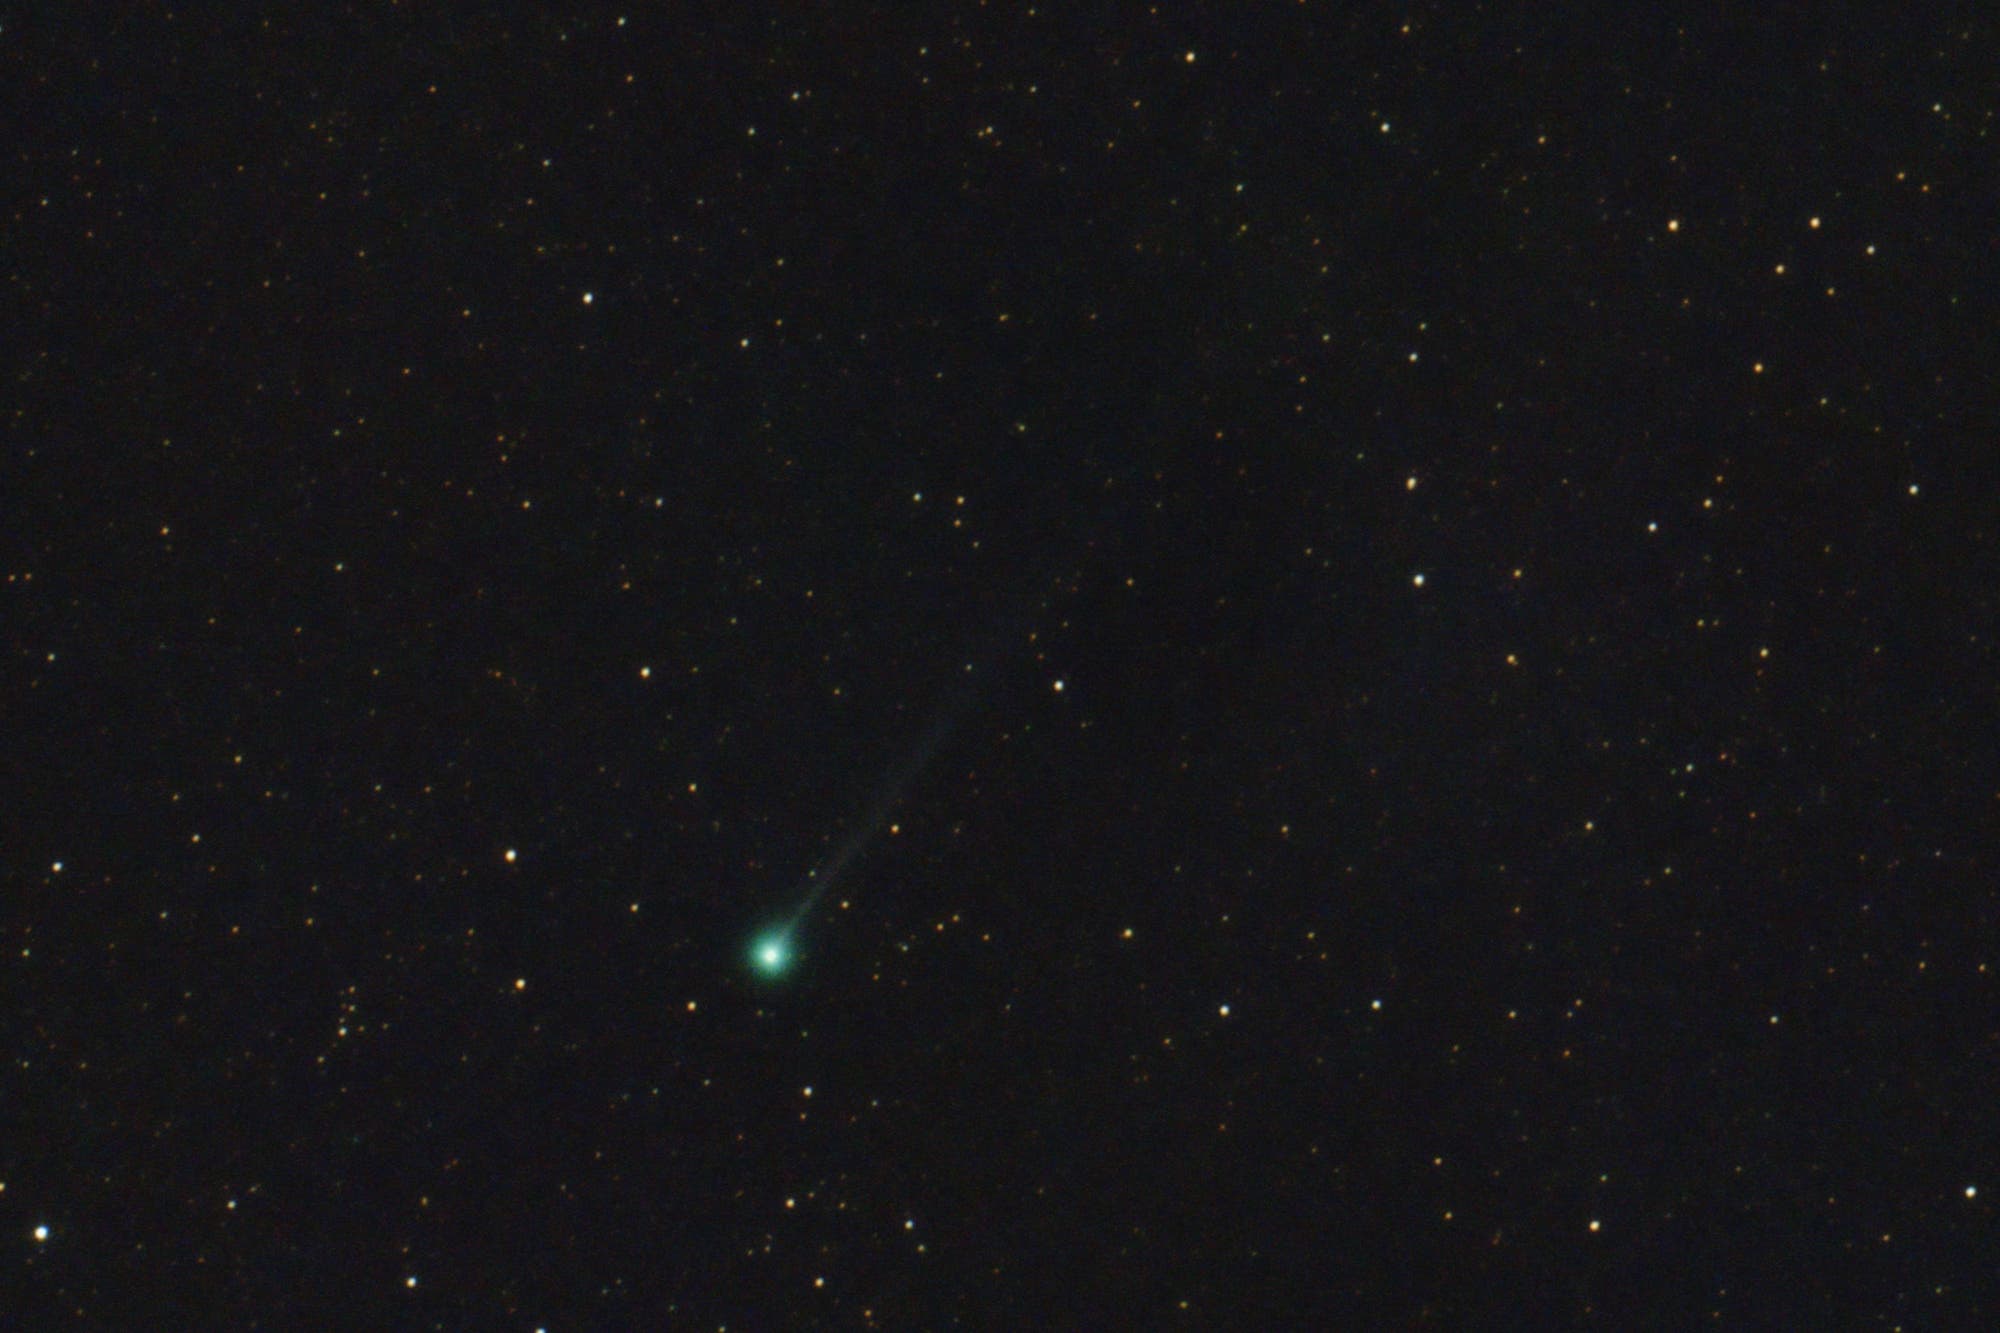 Comet NEOWISE says goodbye